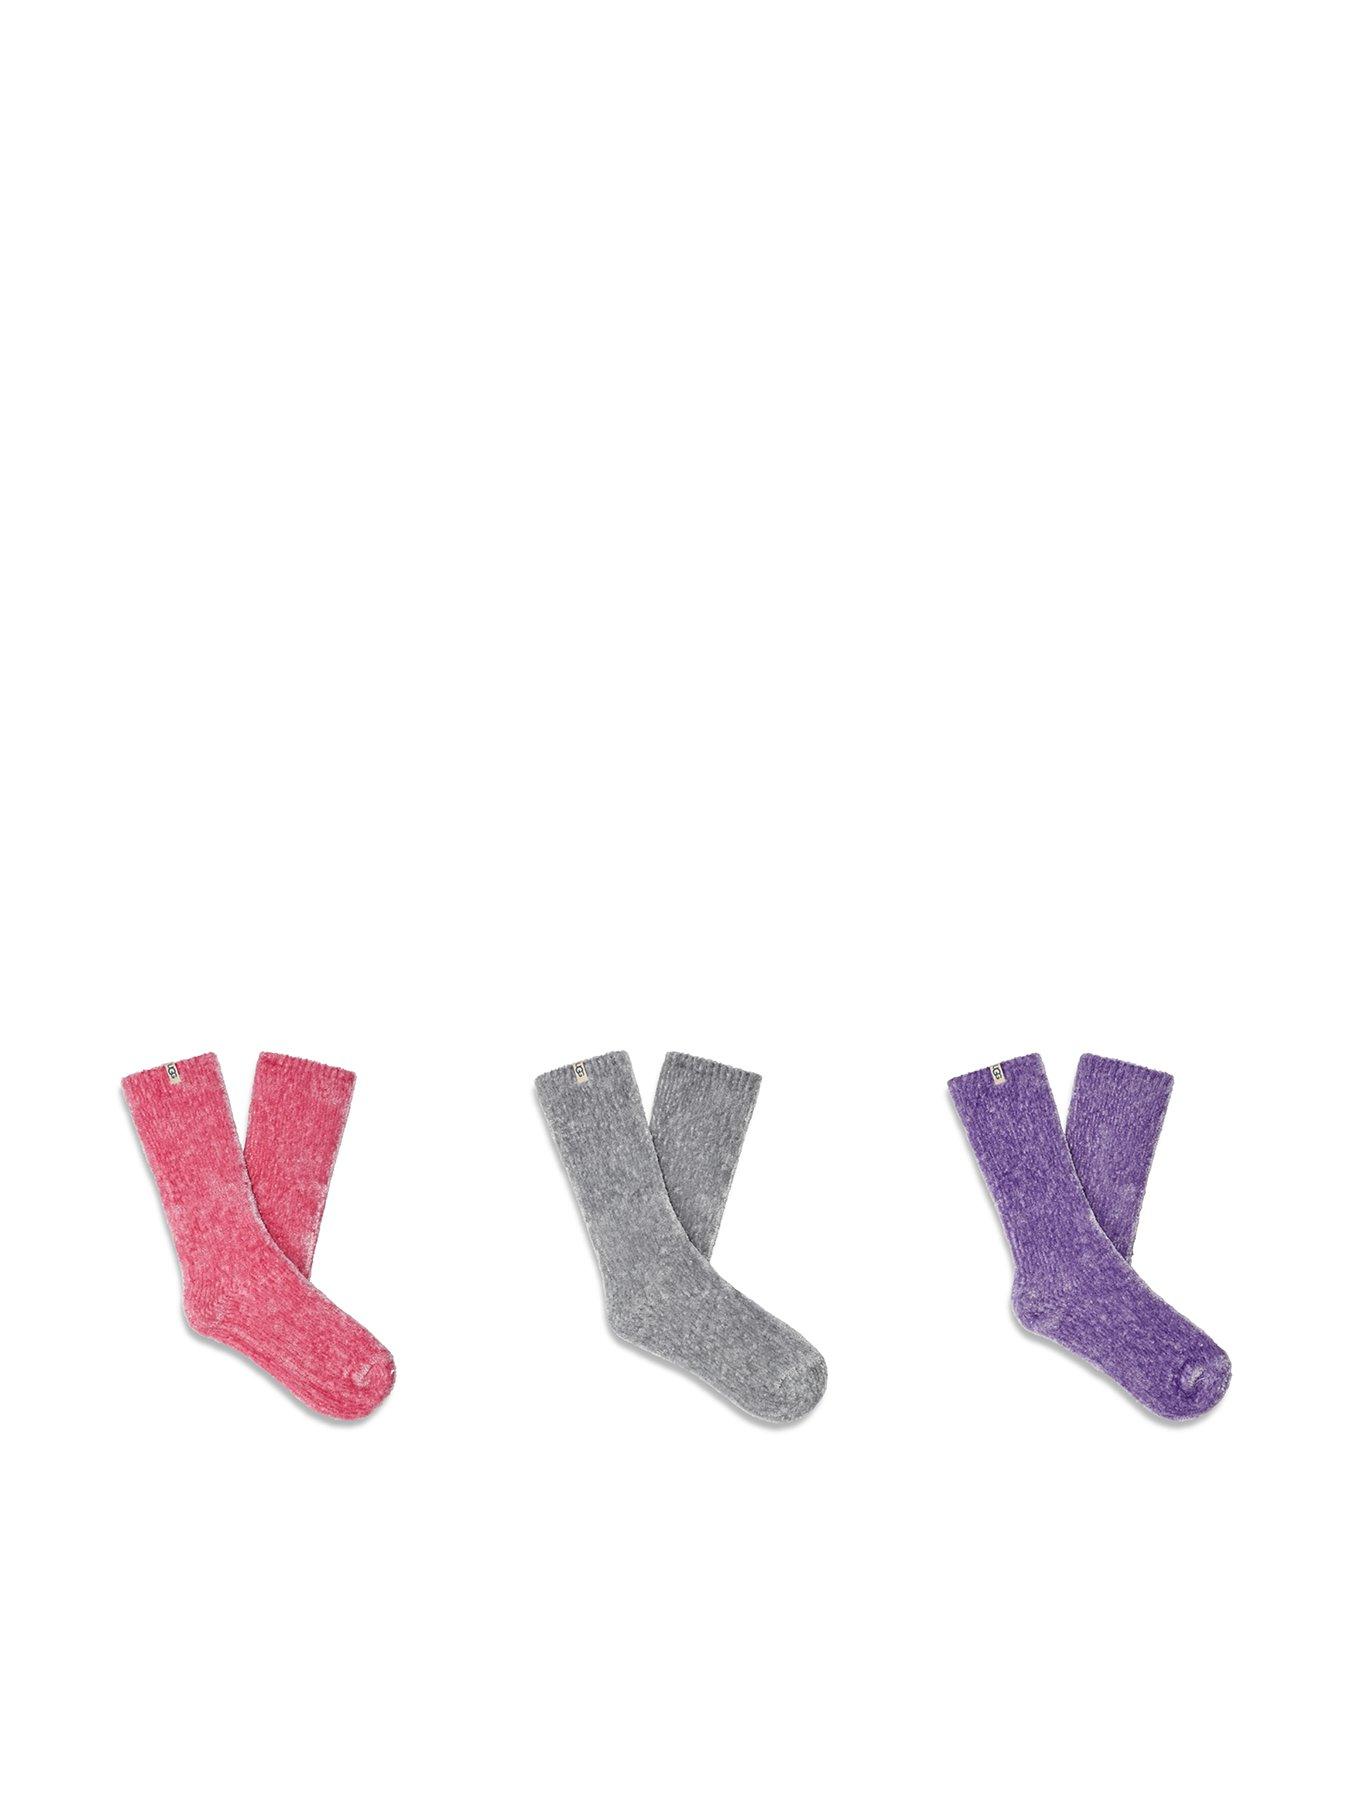 UGG Exclusive Leda Sparkle 3 Pack Socks - Pink Meadow / Metal Grey